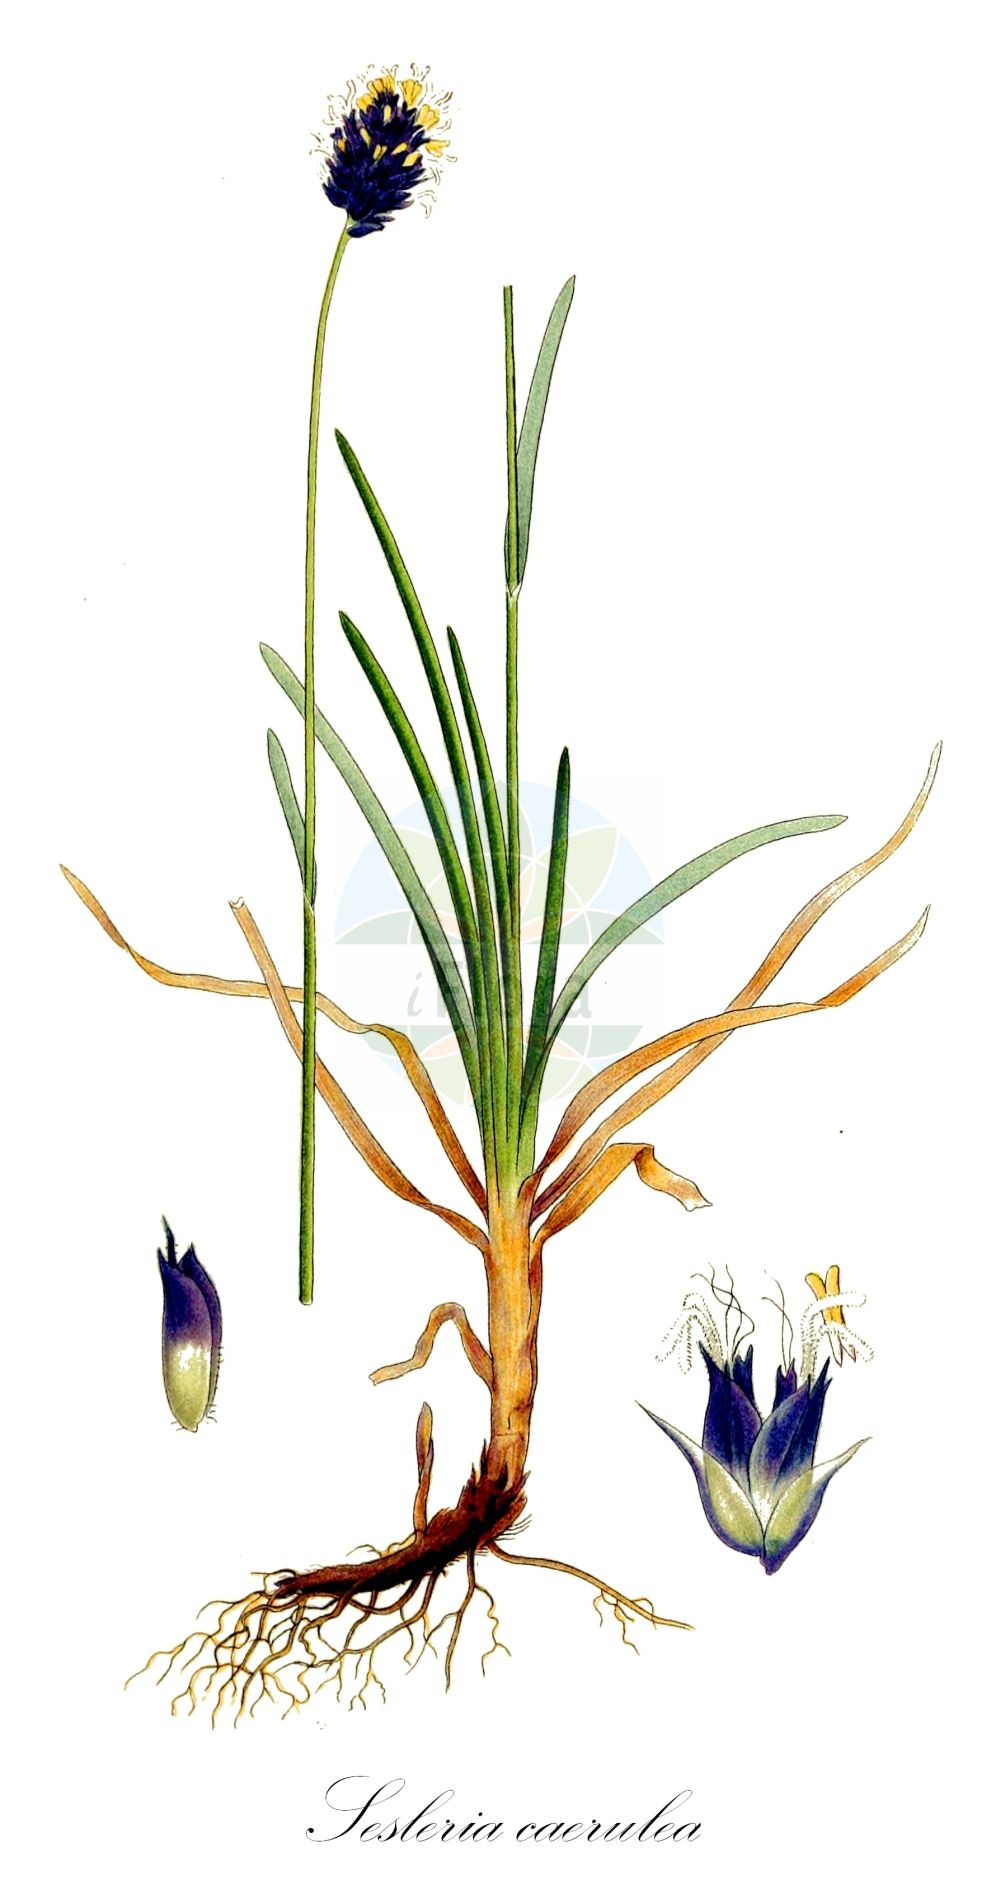 Historische Abbildung von Sesleria caerulea (Kalk-Blaugras - Blue Moor-grass). Das Bild zeigt Blatt, Bluete, Frucht und Same. ---- Historical Drawing of Sesleria caerulea (Kalk-Blaugras - Blue Moor-grass). The image is showing leaf, flower, fruit and seed.(Sesleria caerulea,Kalk-Blaugras,Blue Moor-grass,Aira varia,Cynosurus caeruleus,Sesleria albicans,Sesleria caerulea,Sesleria calcarea,Sesleria deyliana,Sesleria varia,Kalk-Blaugras,Gewoehnliches Blaugras,Blue Moor-grass,Blue Sesleria,Sesleria,Blaugras,Poaceae,Süßgräser,Grass family,Blatt,Bluete,Frucht,Same,leaf,flower,fruit,seed,Lindman (1901-1905))